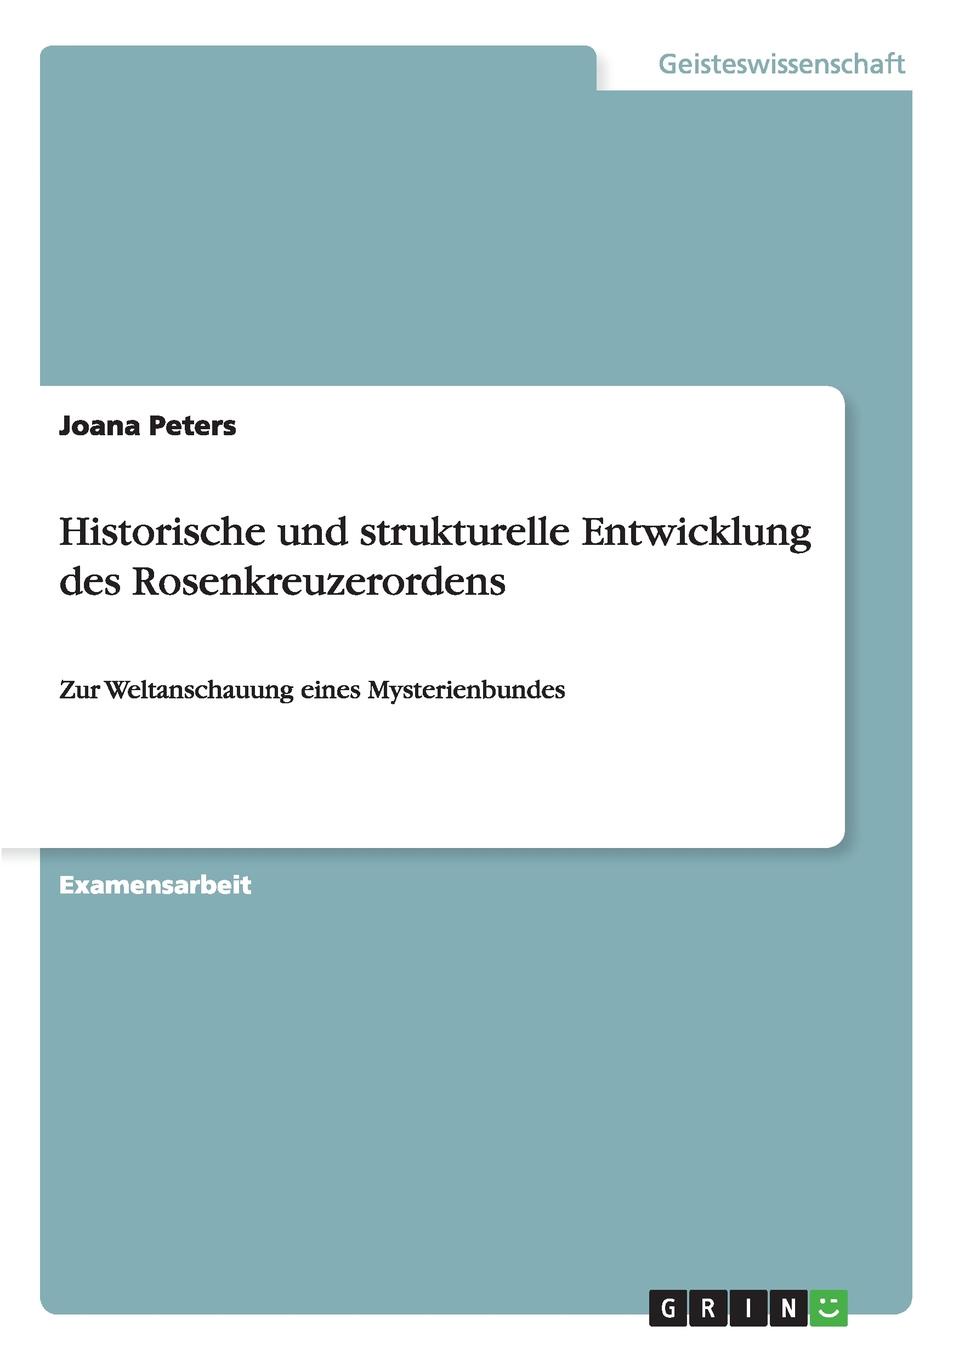 Joana Peters Historische und strukturelle Entwicklung des Rosenkreuzerordens